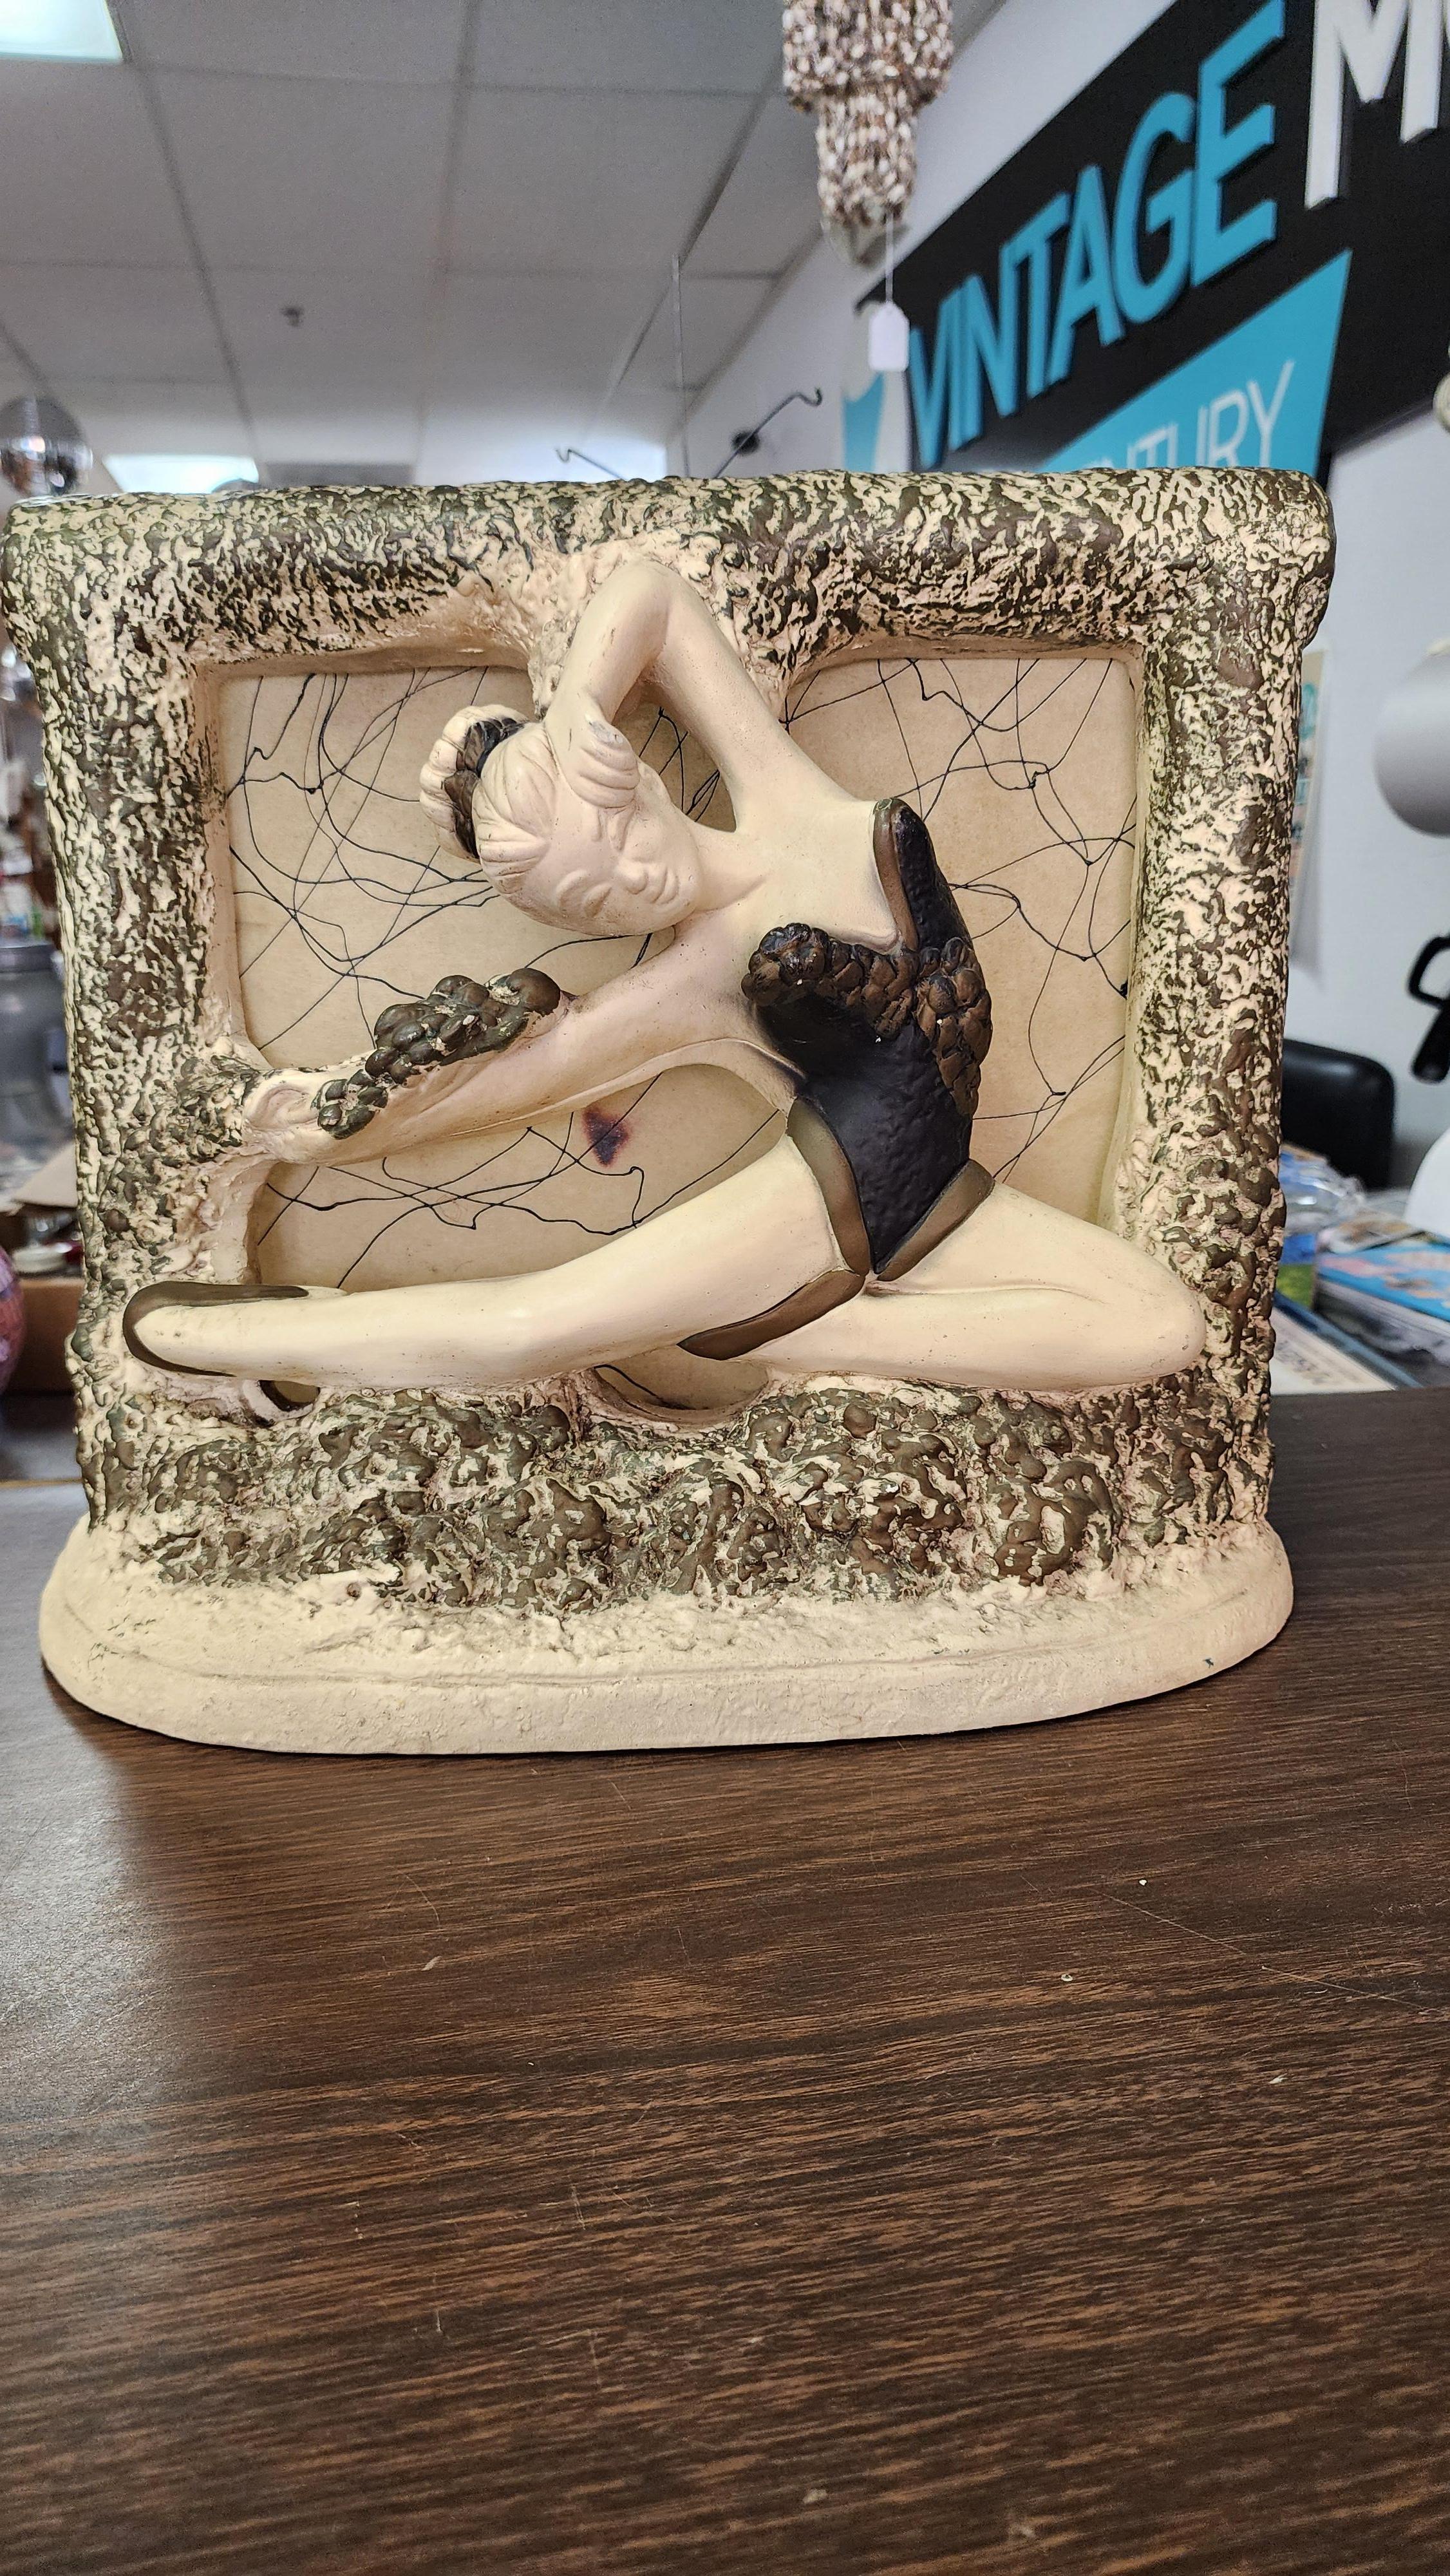 Cette incroyable lampe des années 1950 est signée N.Y.S. Elle représente une danseuse de ballet avec un tutu noir et un chignon dans les cheveux en plein saut. La lumière vient de l'arrière et brille à travers le vélin décoré. Le cadre qui entoure